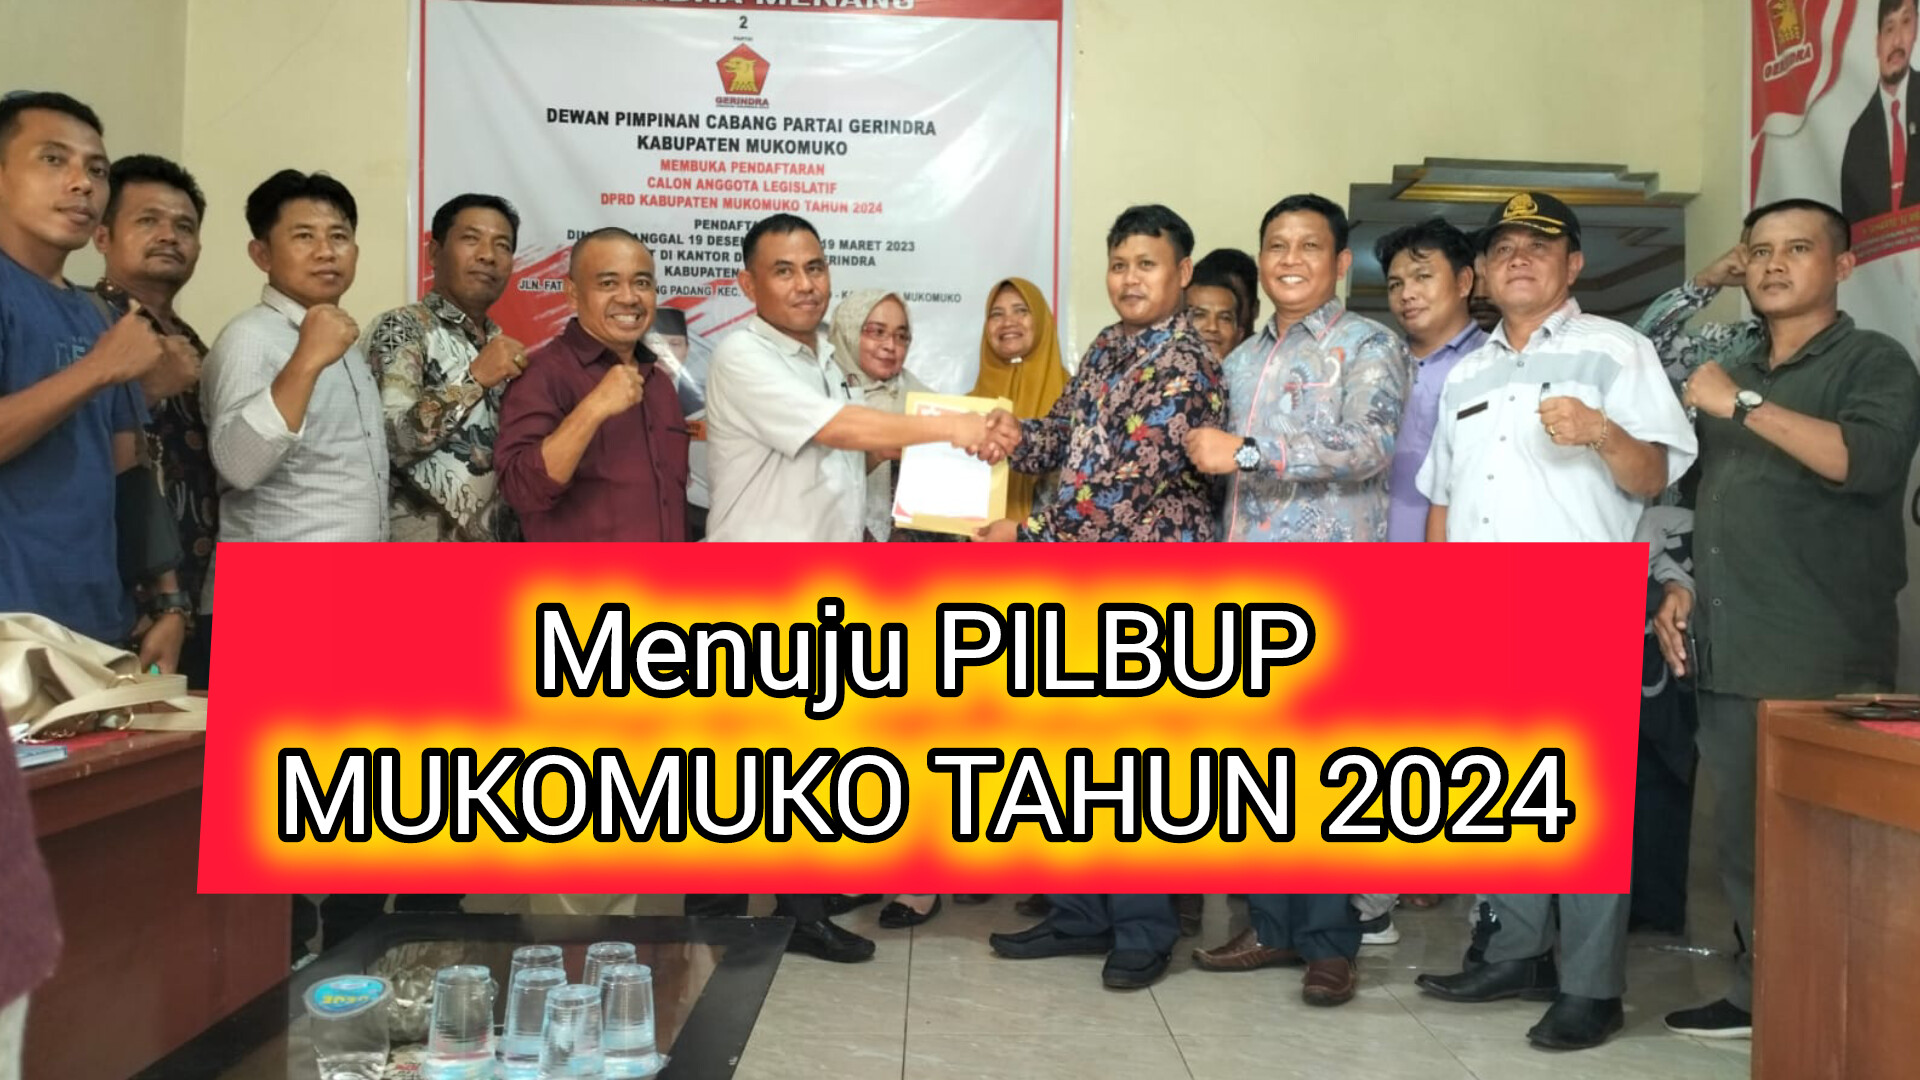 Makin Seru, APDESI Mendukung Rismanaji Kades Tunggal Jaya Dalam Pilbup Mukomuko 2024